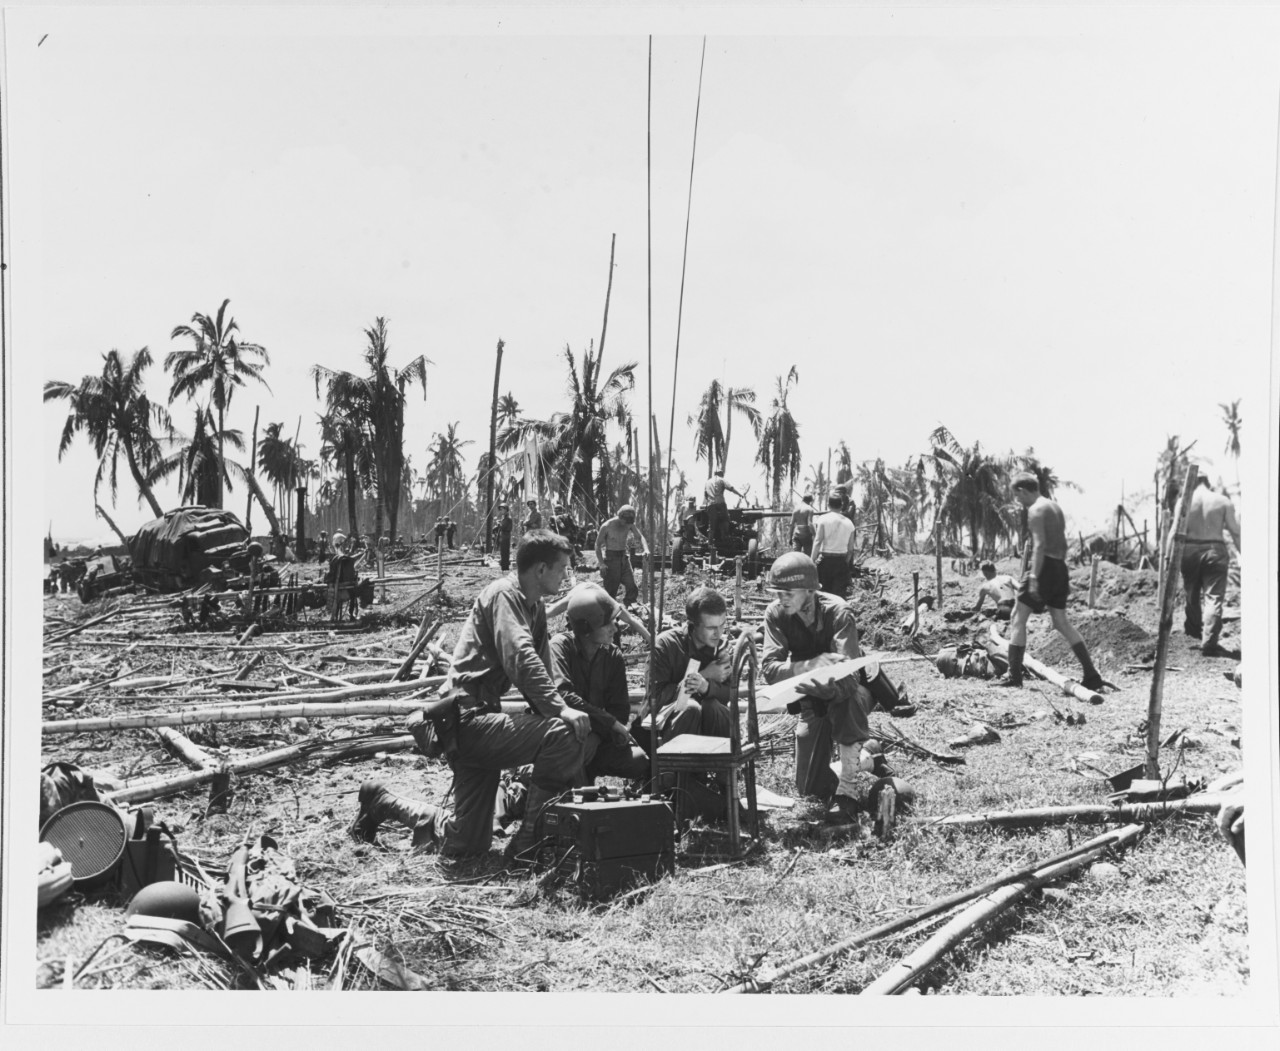 Leyte Landings, 20 October 1944